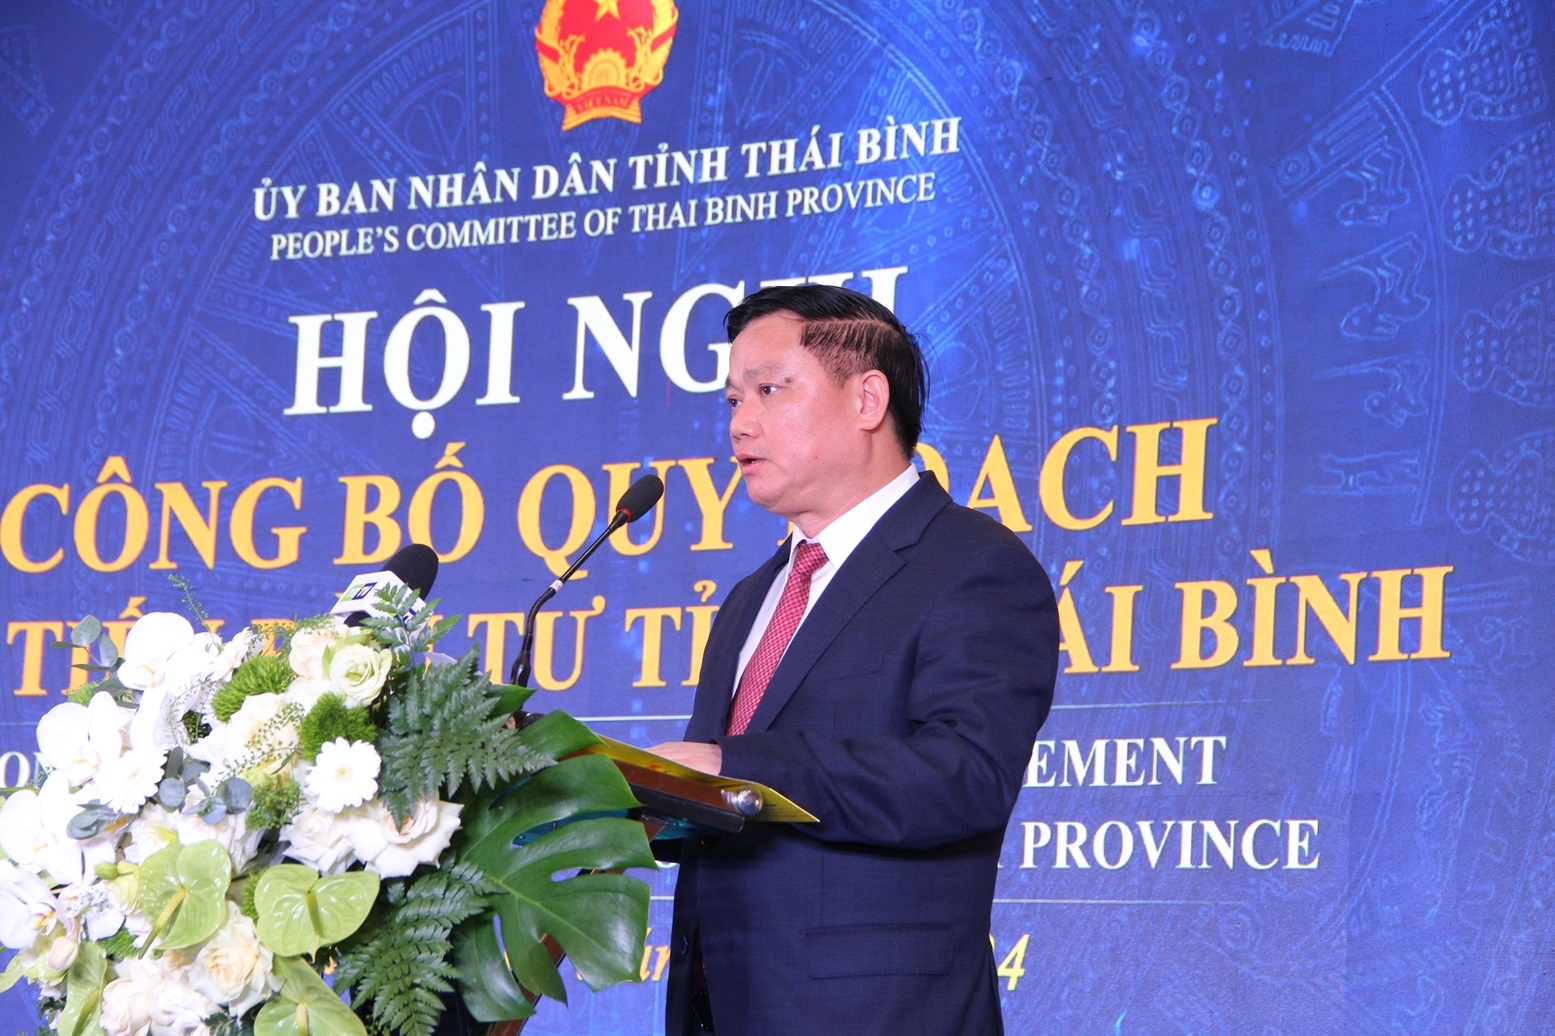 Theo Chủ tịch UBND tỉnh Thái Bình Nguyễn Khắc Thận, Quy hoạch tỉnh sẽ mở ra không gian phát triển mới, tạo tiền đề cho thu hút đầu tư, phát triển KT-XH nhanh, bền vững